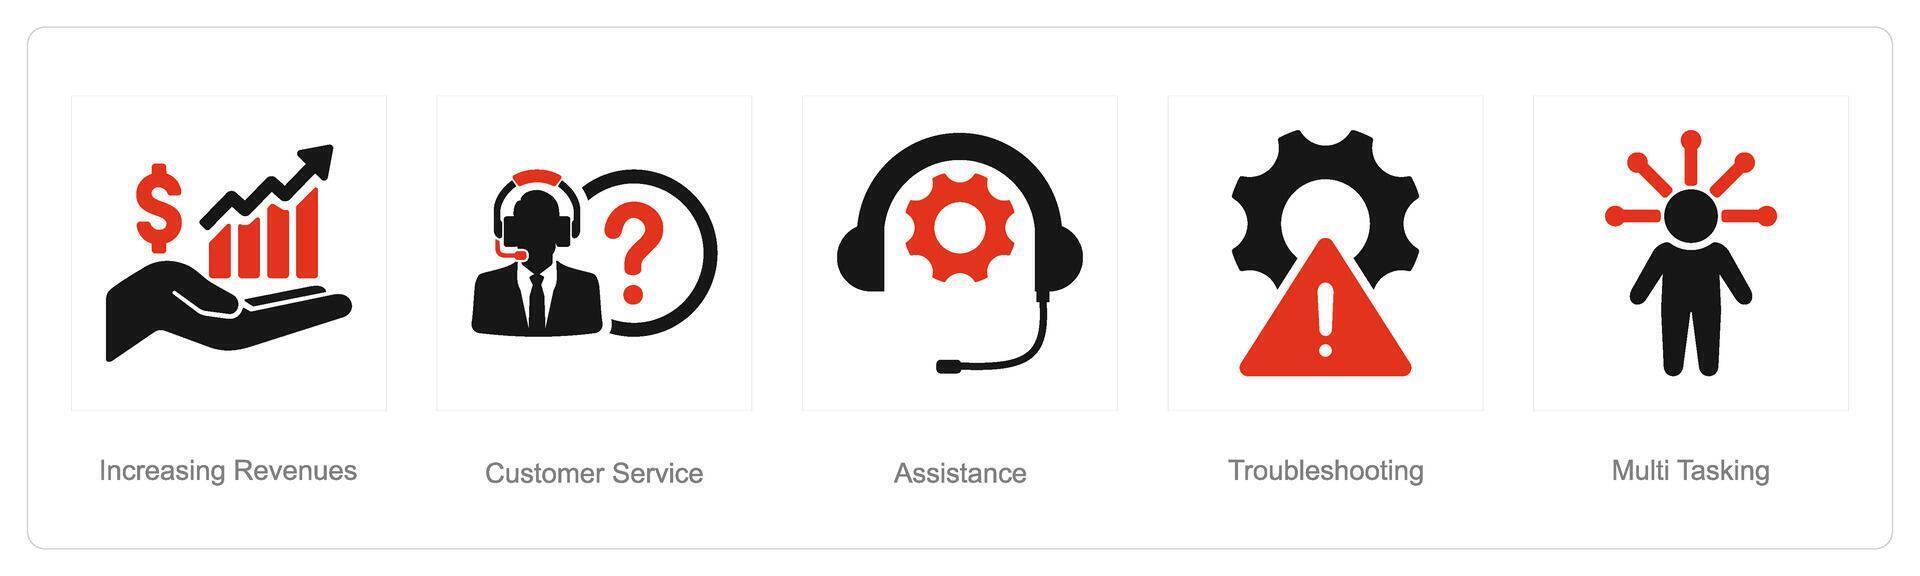 uma conjunto do 5 cliente serviço ícones Como aumentando receitas, cliente serviço, assistência vetor